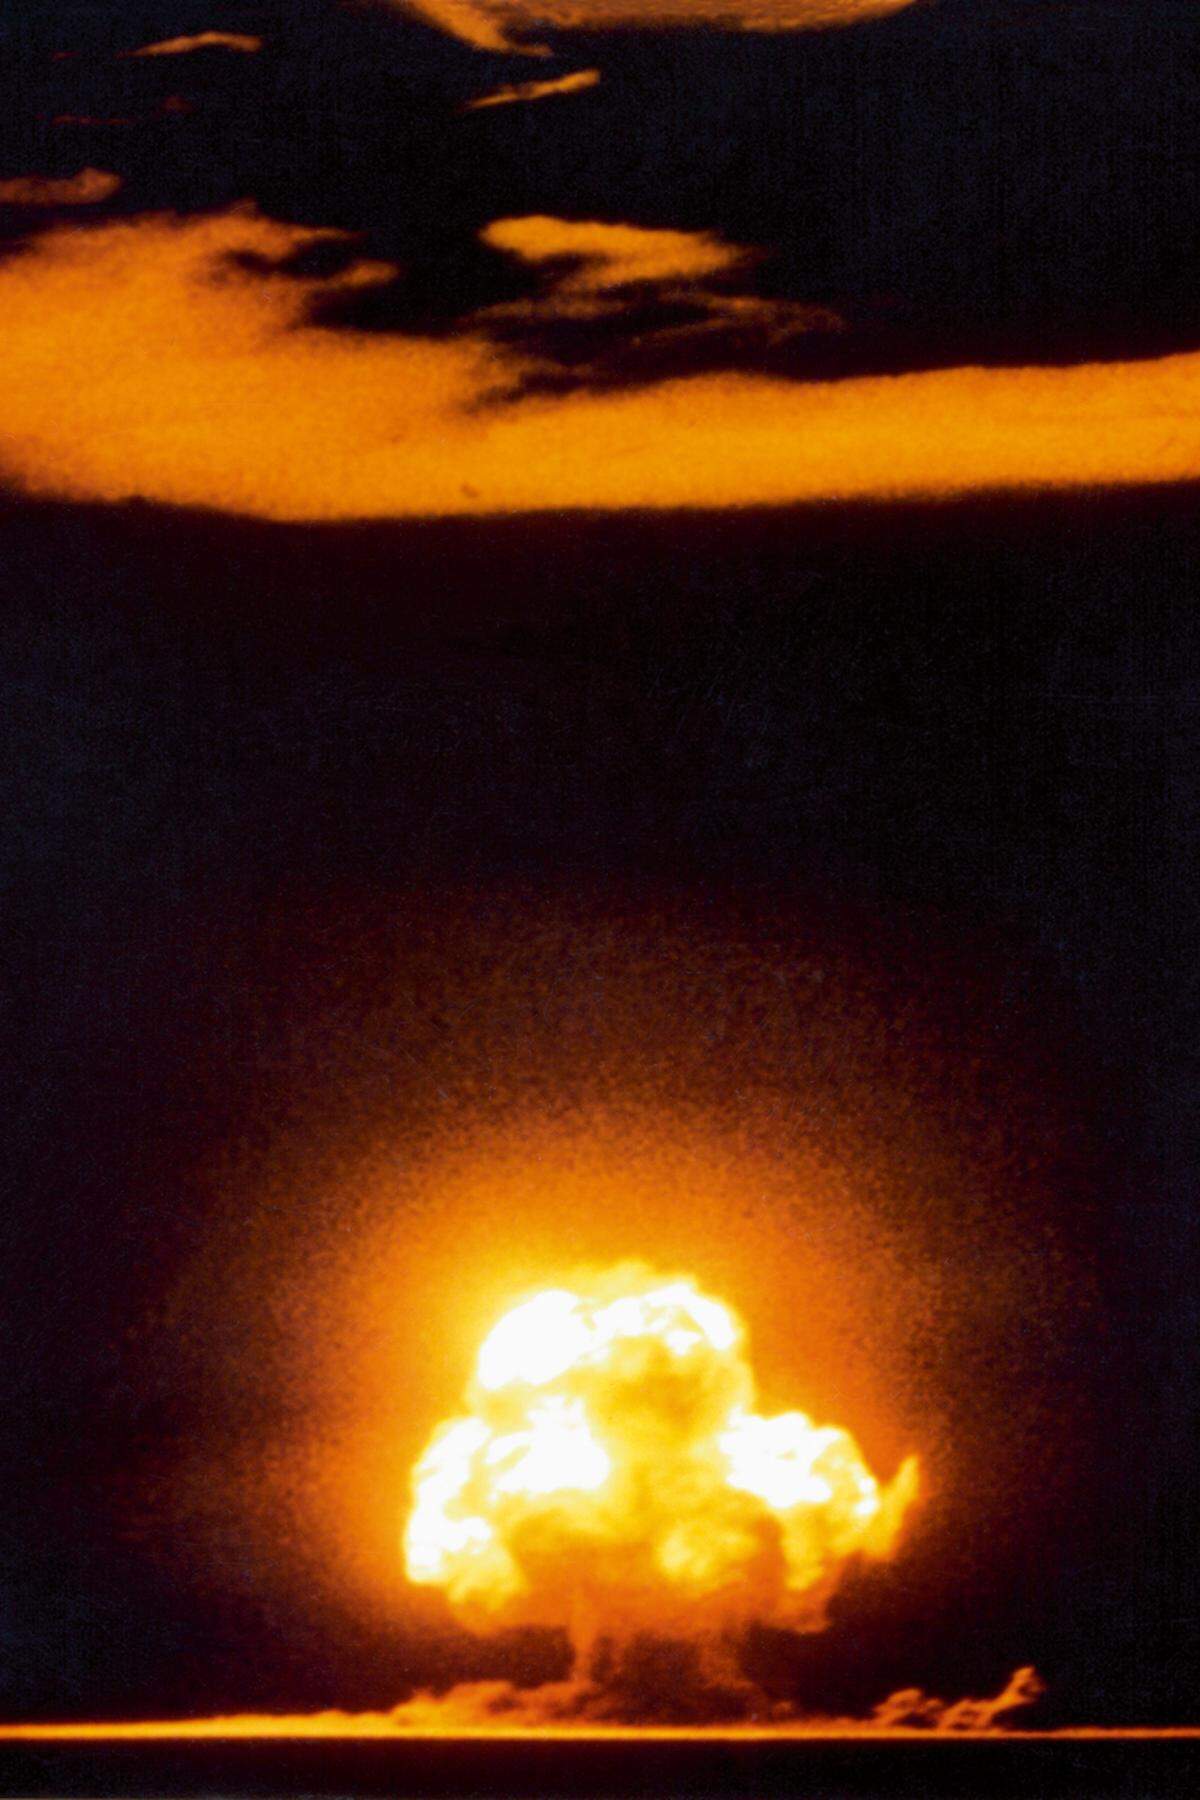 Es war der 16. Juli 1945 als im US-Bundesstaat New Mexico um 5:29 Uhr morgens die erste Atombombe gezündet wurde. "Das ganze Land war erhellt von einem versengenden Licht, dessen Stärke viele Male größer war als das der mittäglichen Wüstensonne. Dreißig Sekunden später kam zuerst die Explosion (...) dann folgte fast unmittelbar ein lautes anhaltendes schauerliches Donnern, wie eine Warnung vor dem Jüngsten Tag", sagte damals General Farrell, Vizechef des Manhattan-Projekts.